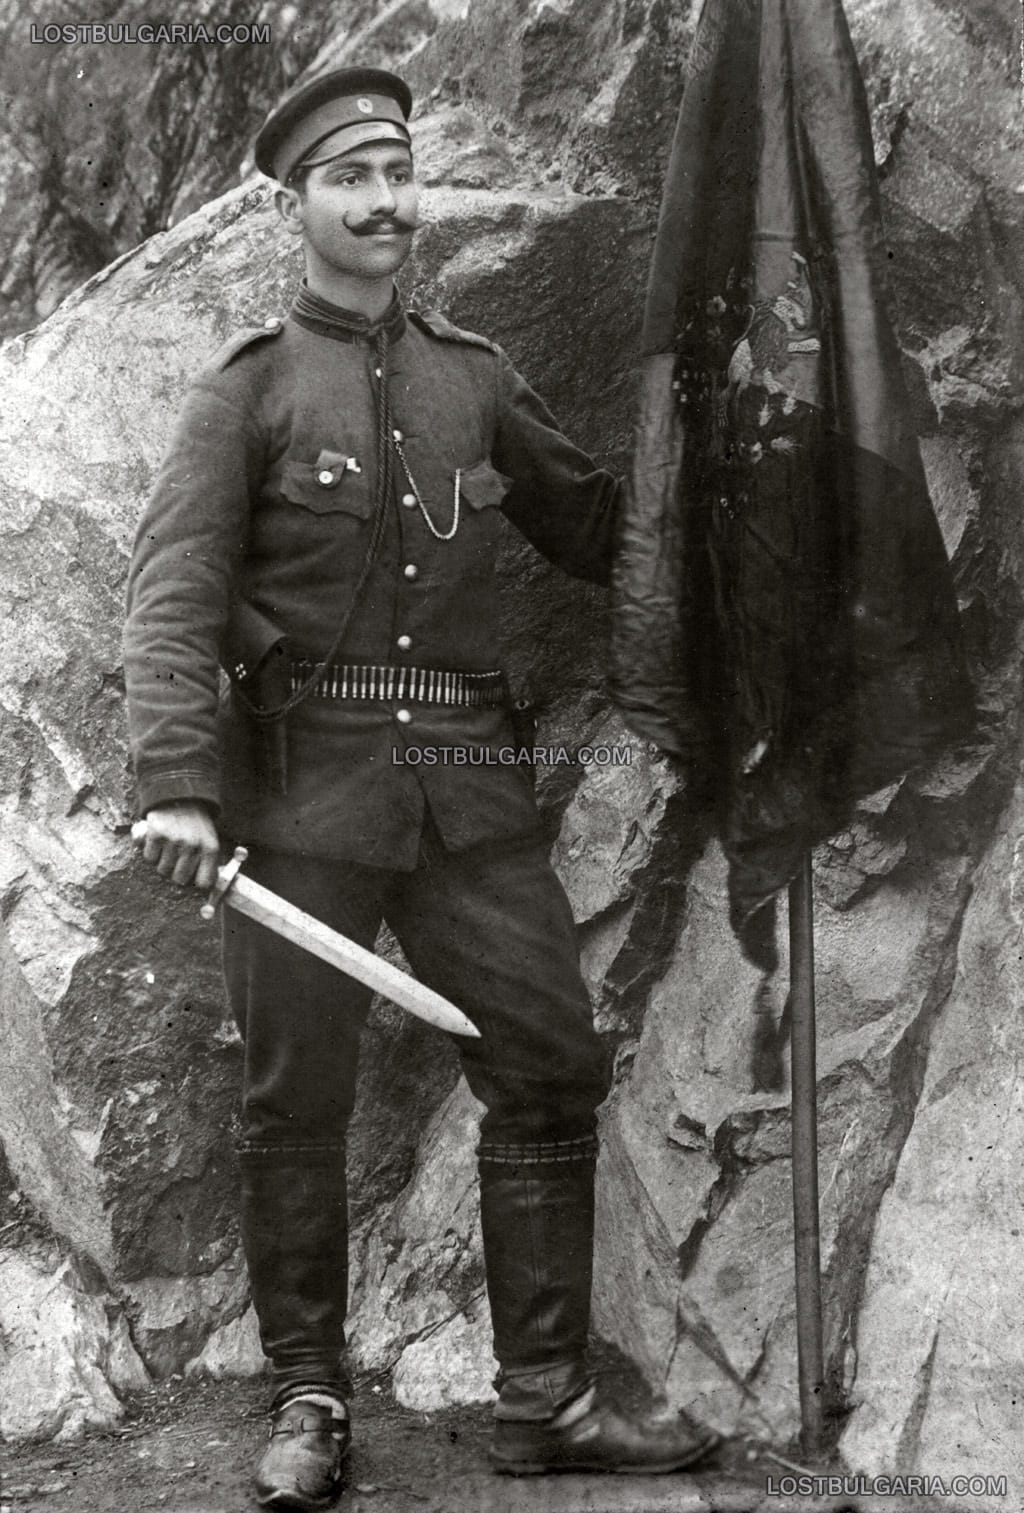 Знаменосец със знамето на 10 Прилепска дружина на Македоно-Одринското опълчение от Балканската война позира с изваден нож - тесак, датирана 14 август 1913 г.